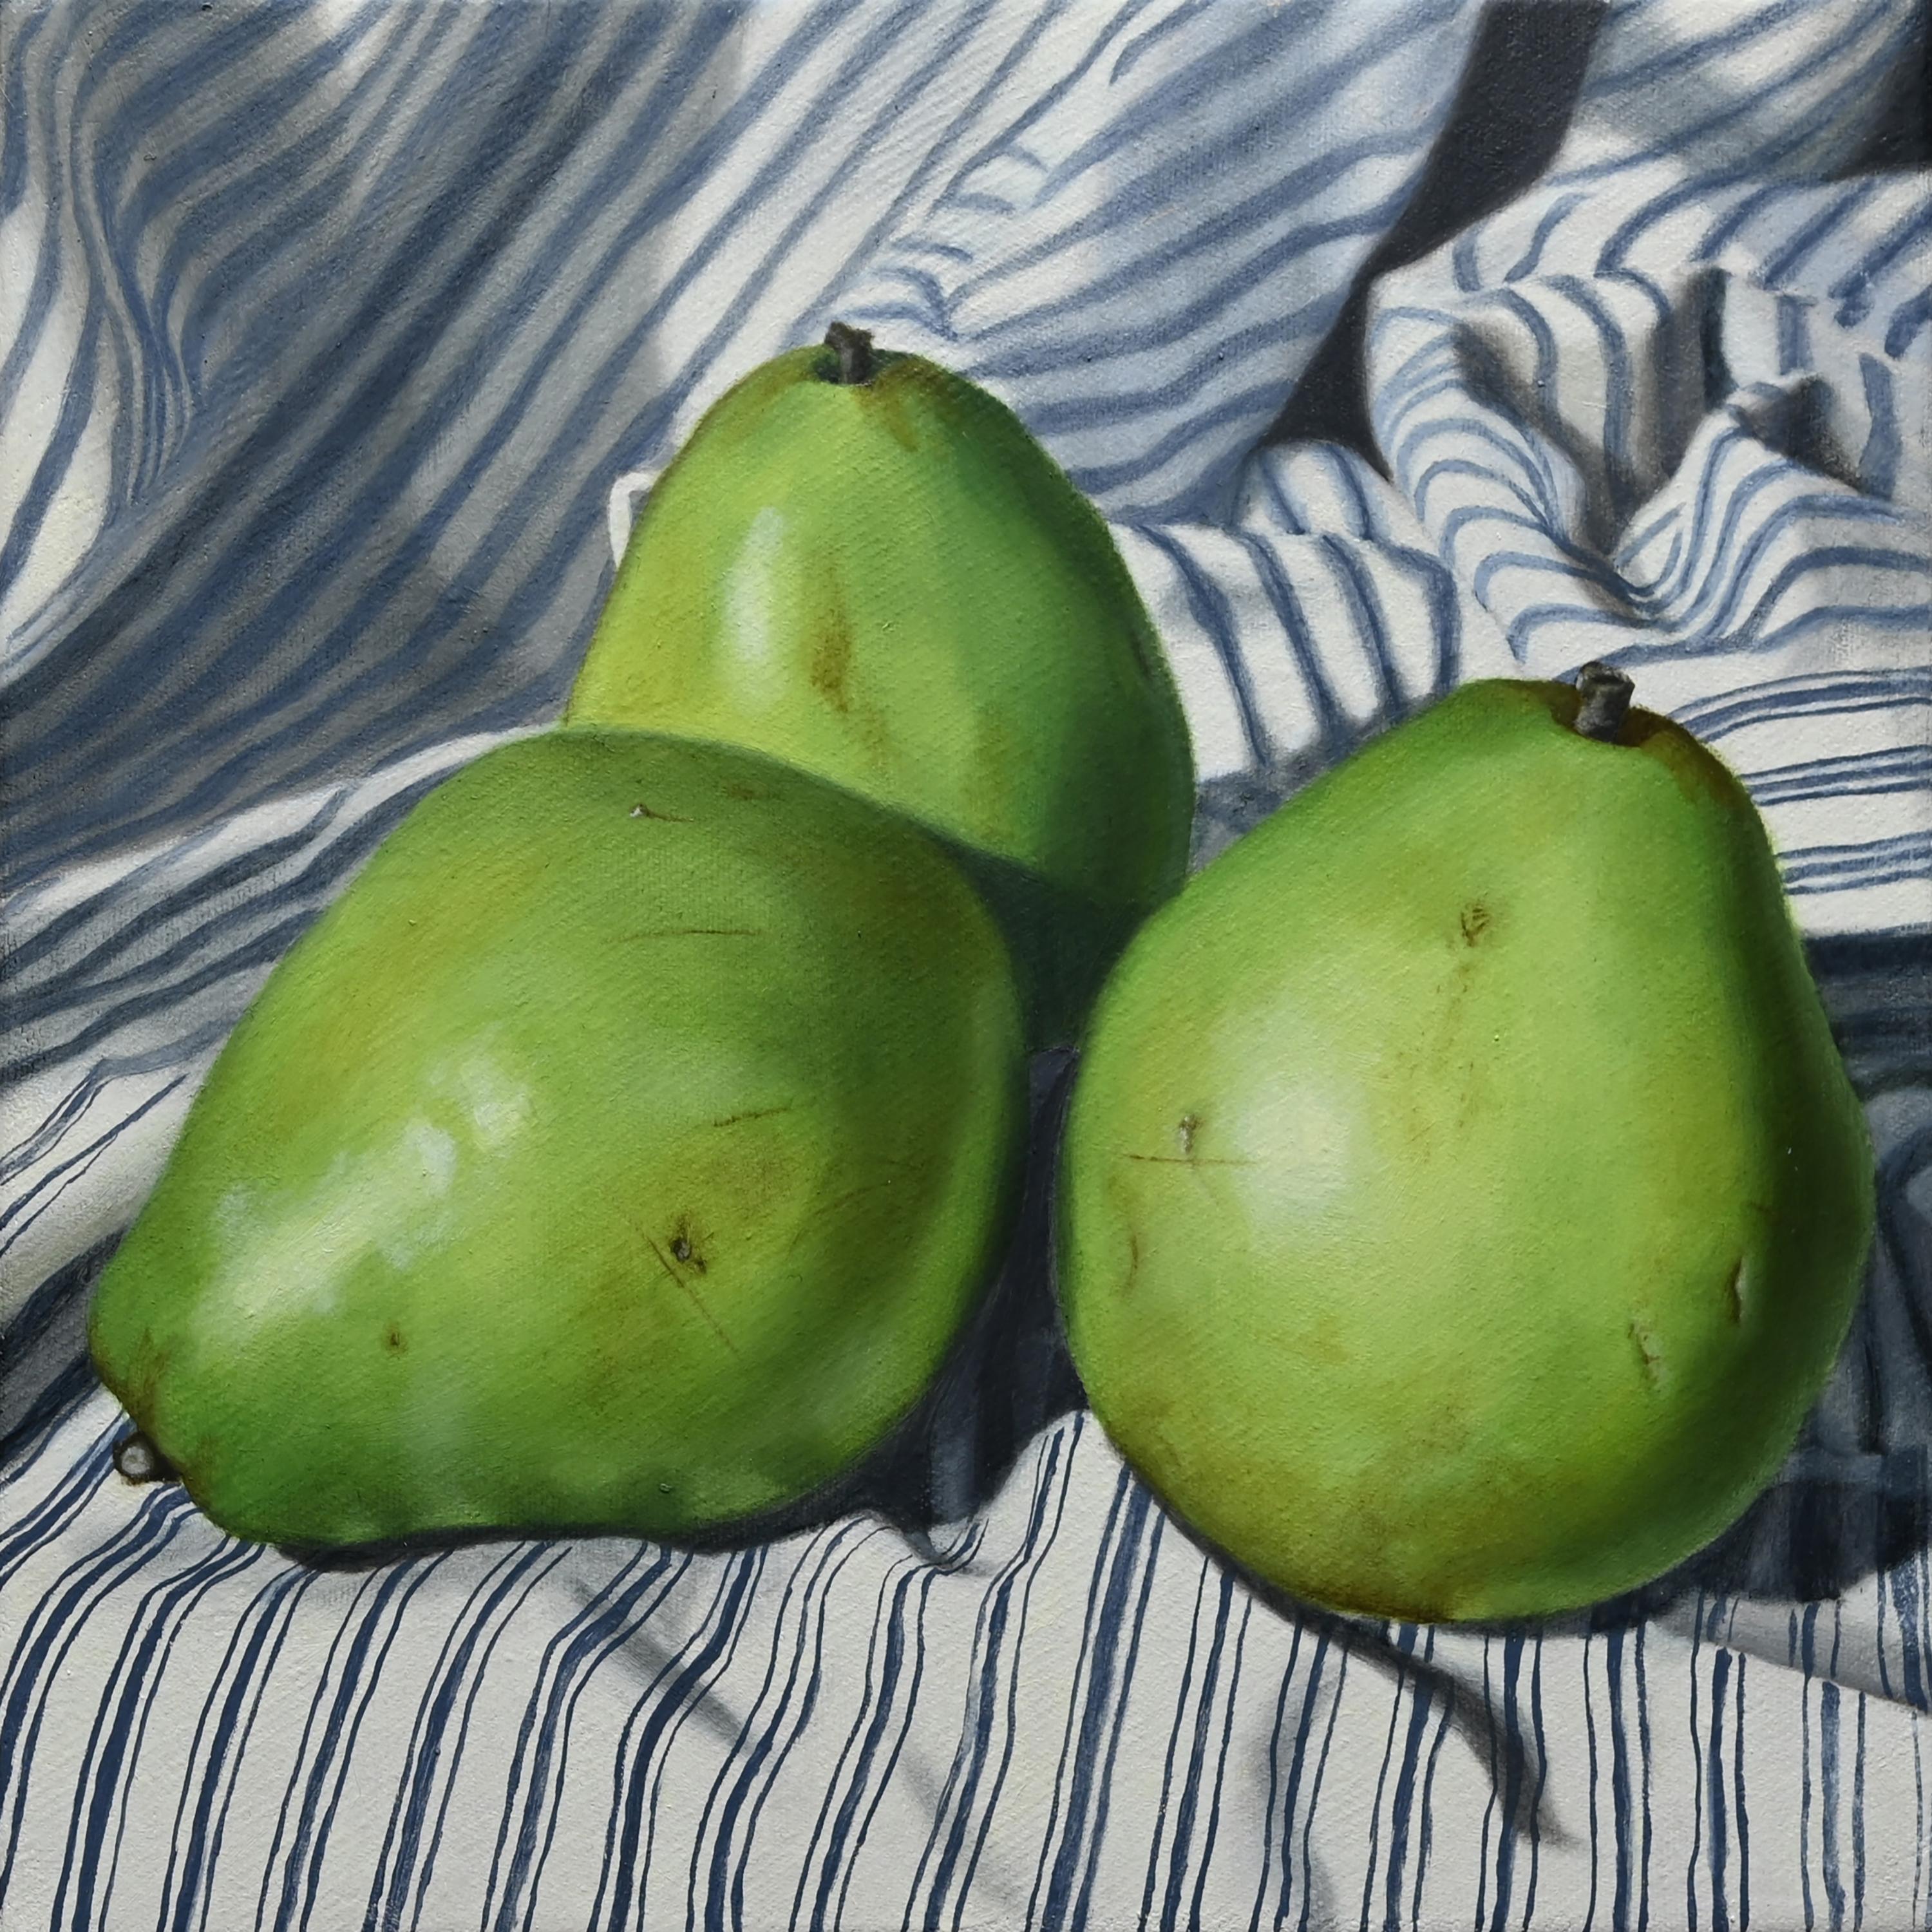 Jordan Baker Still-Life Painting - "Truple" - still life with pears - stripes - realism - Adriaen van Utrecht